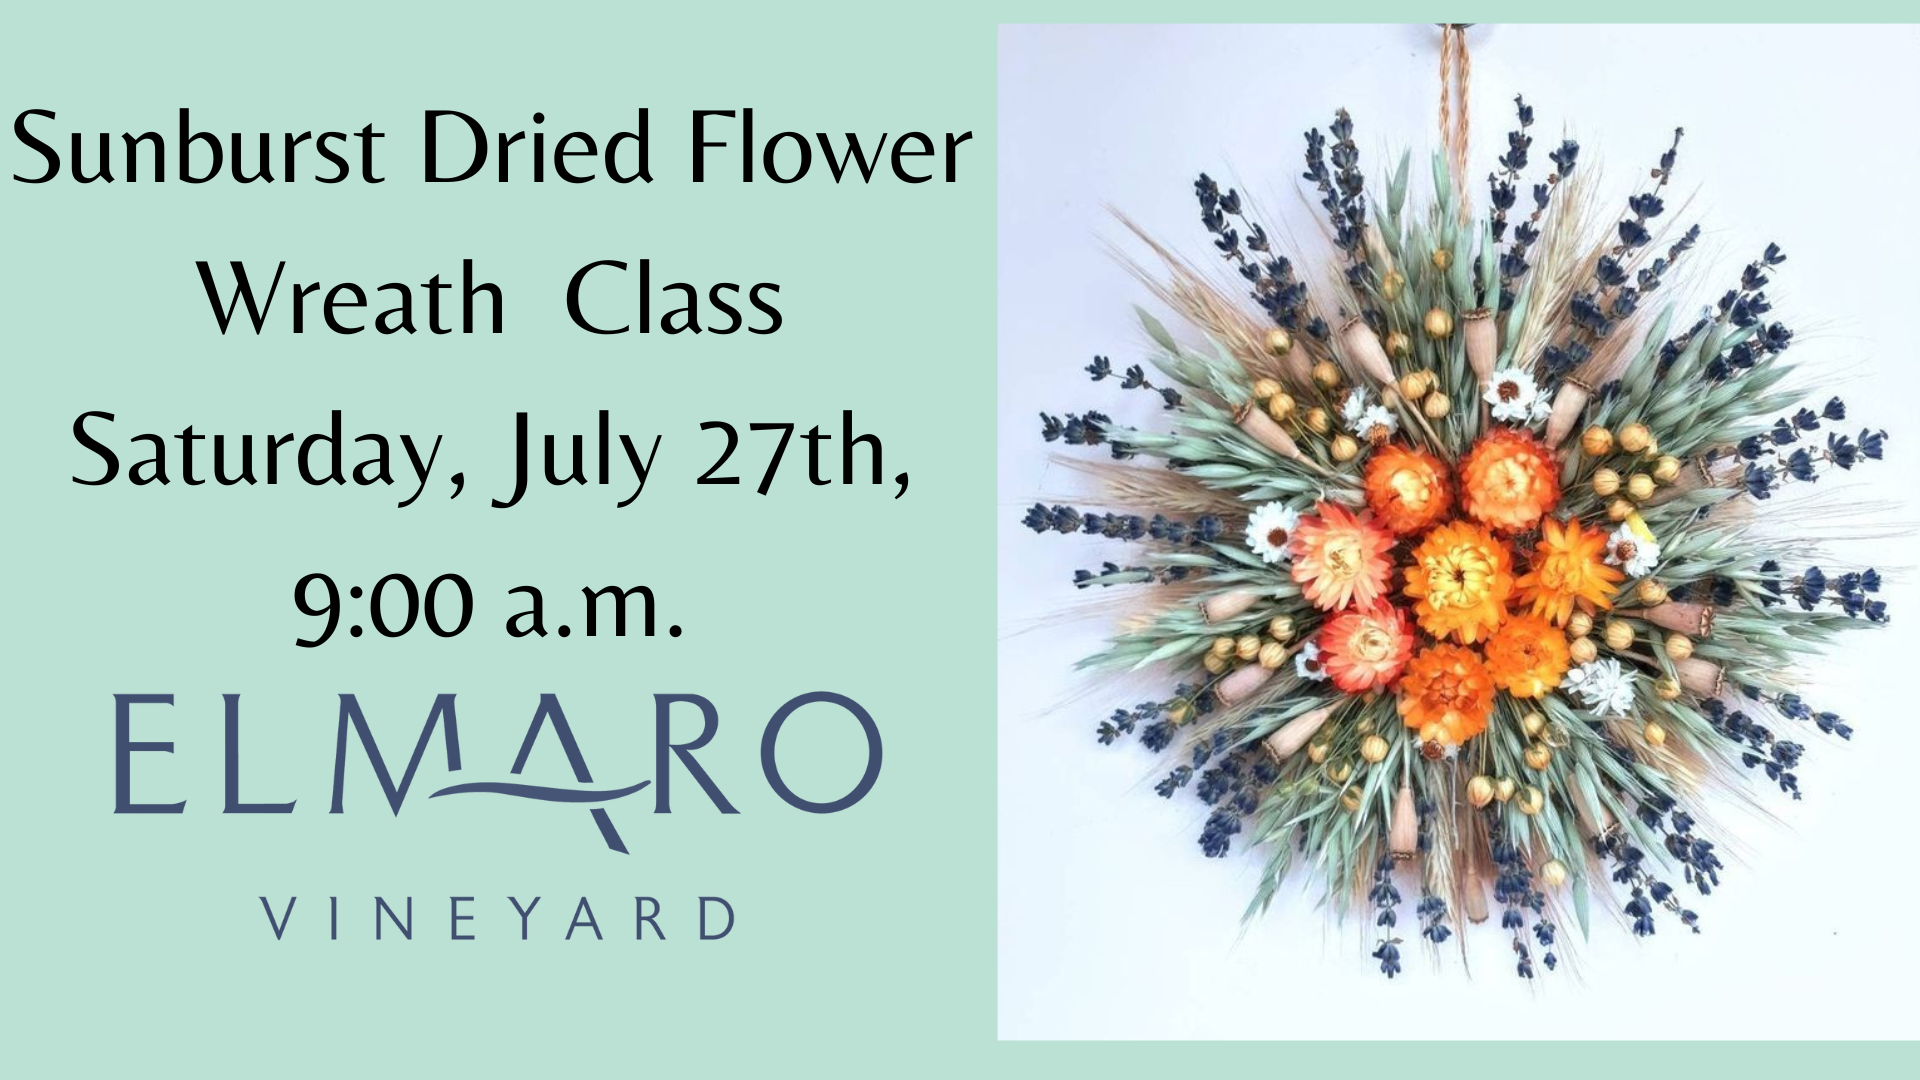 Dried flower wreath class at Elmaro Vineyard.